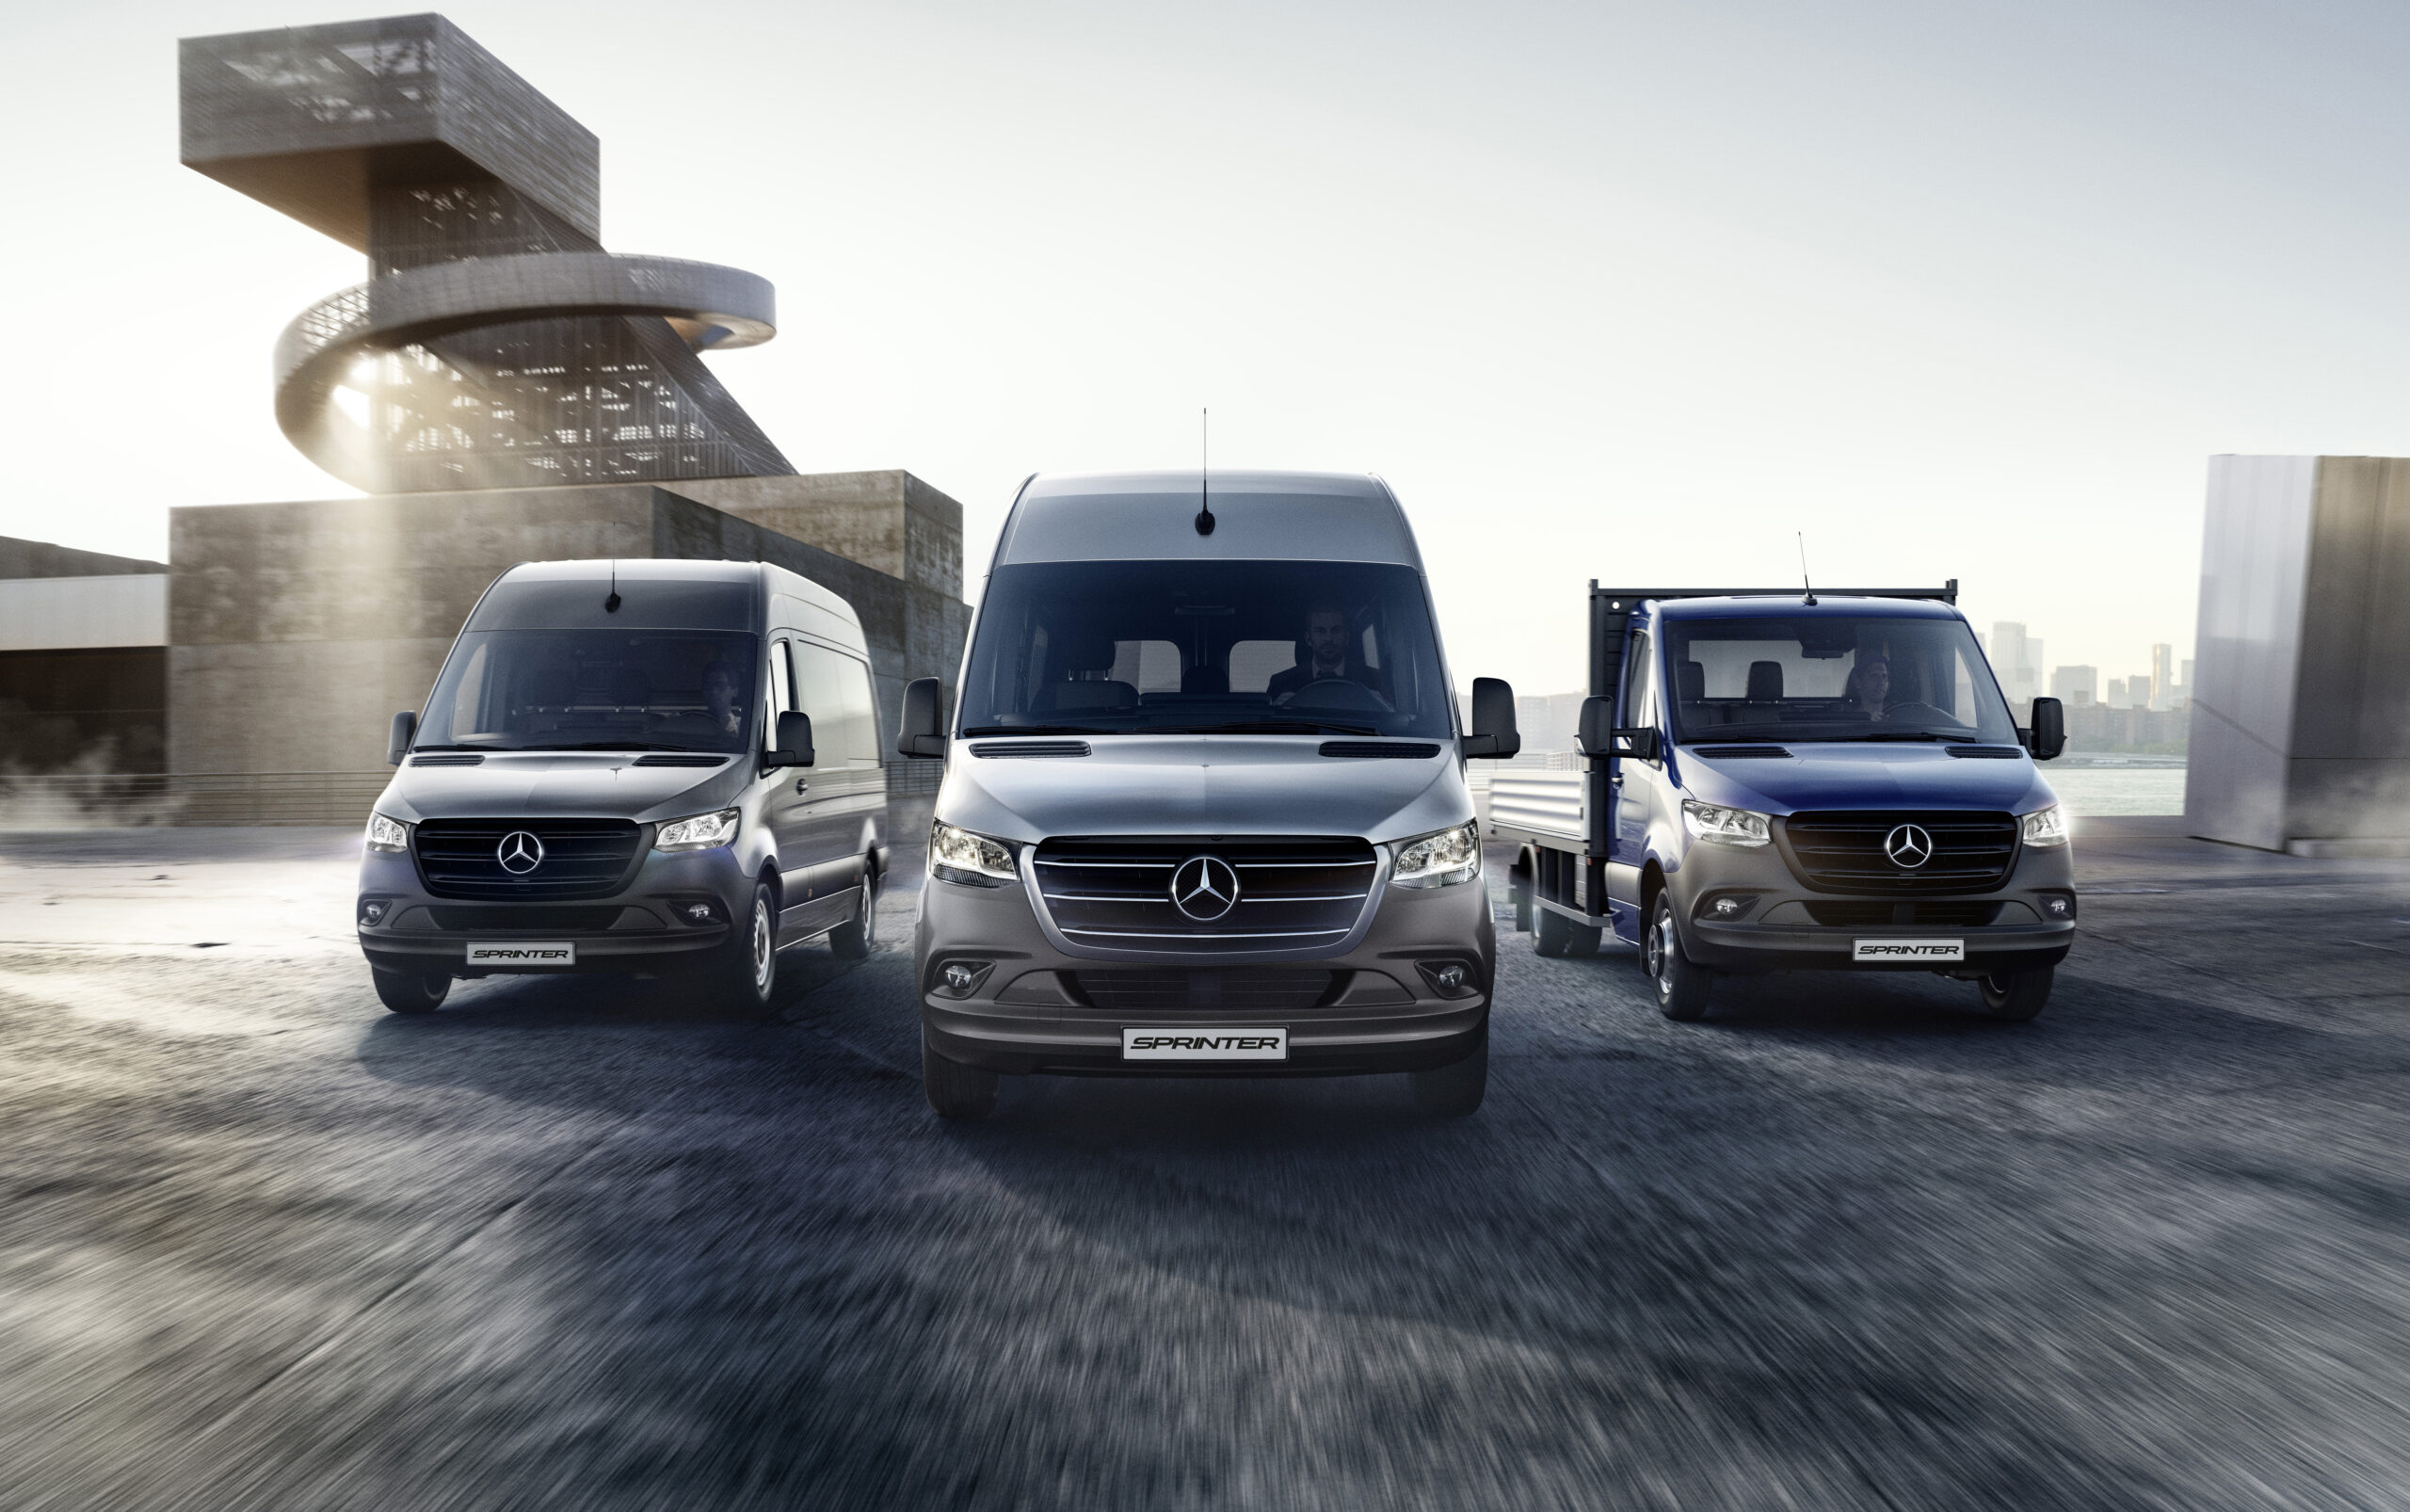 Mercedes-Benz Vans divulga vídeo destacando os atributos da linha Sprinter